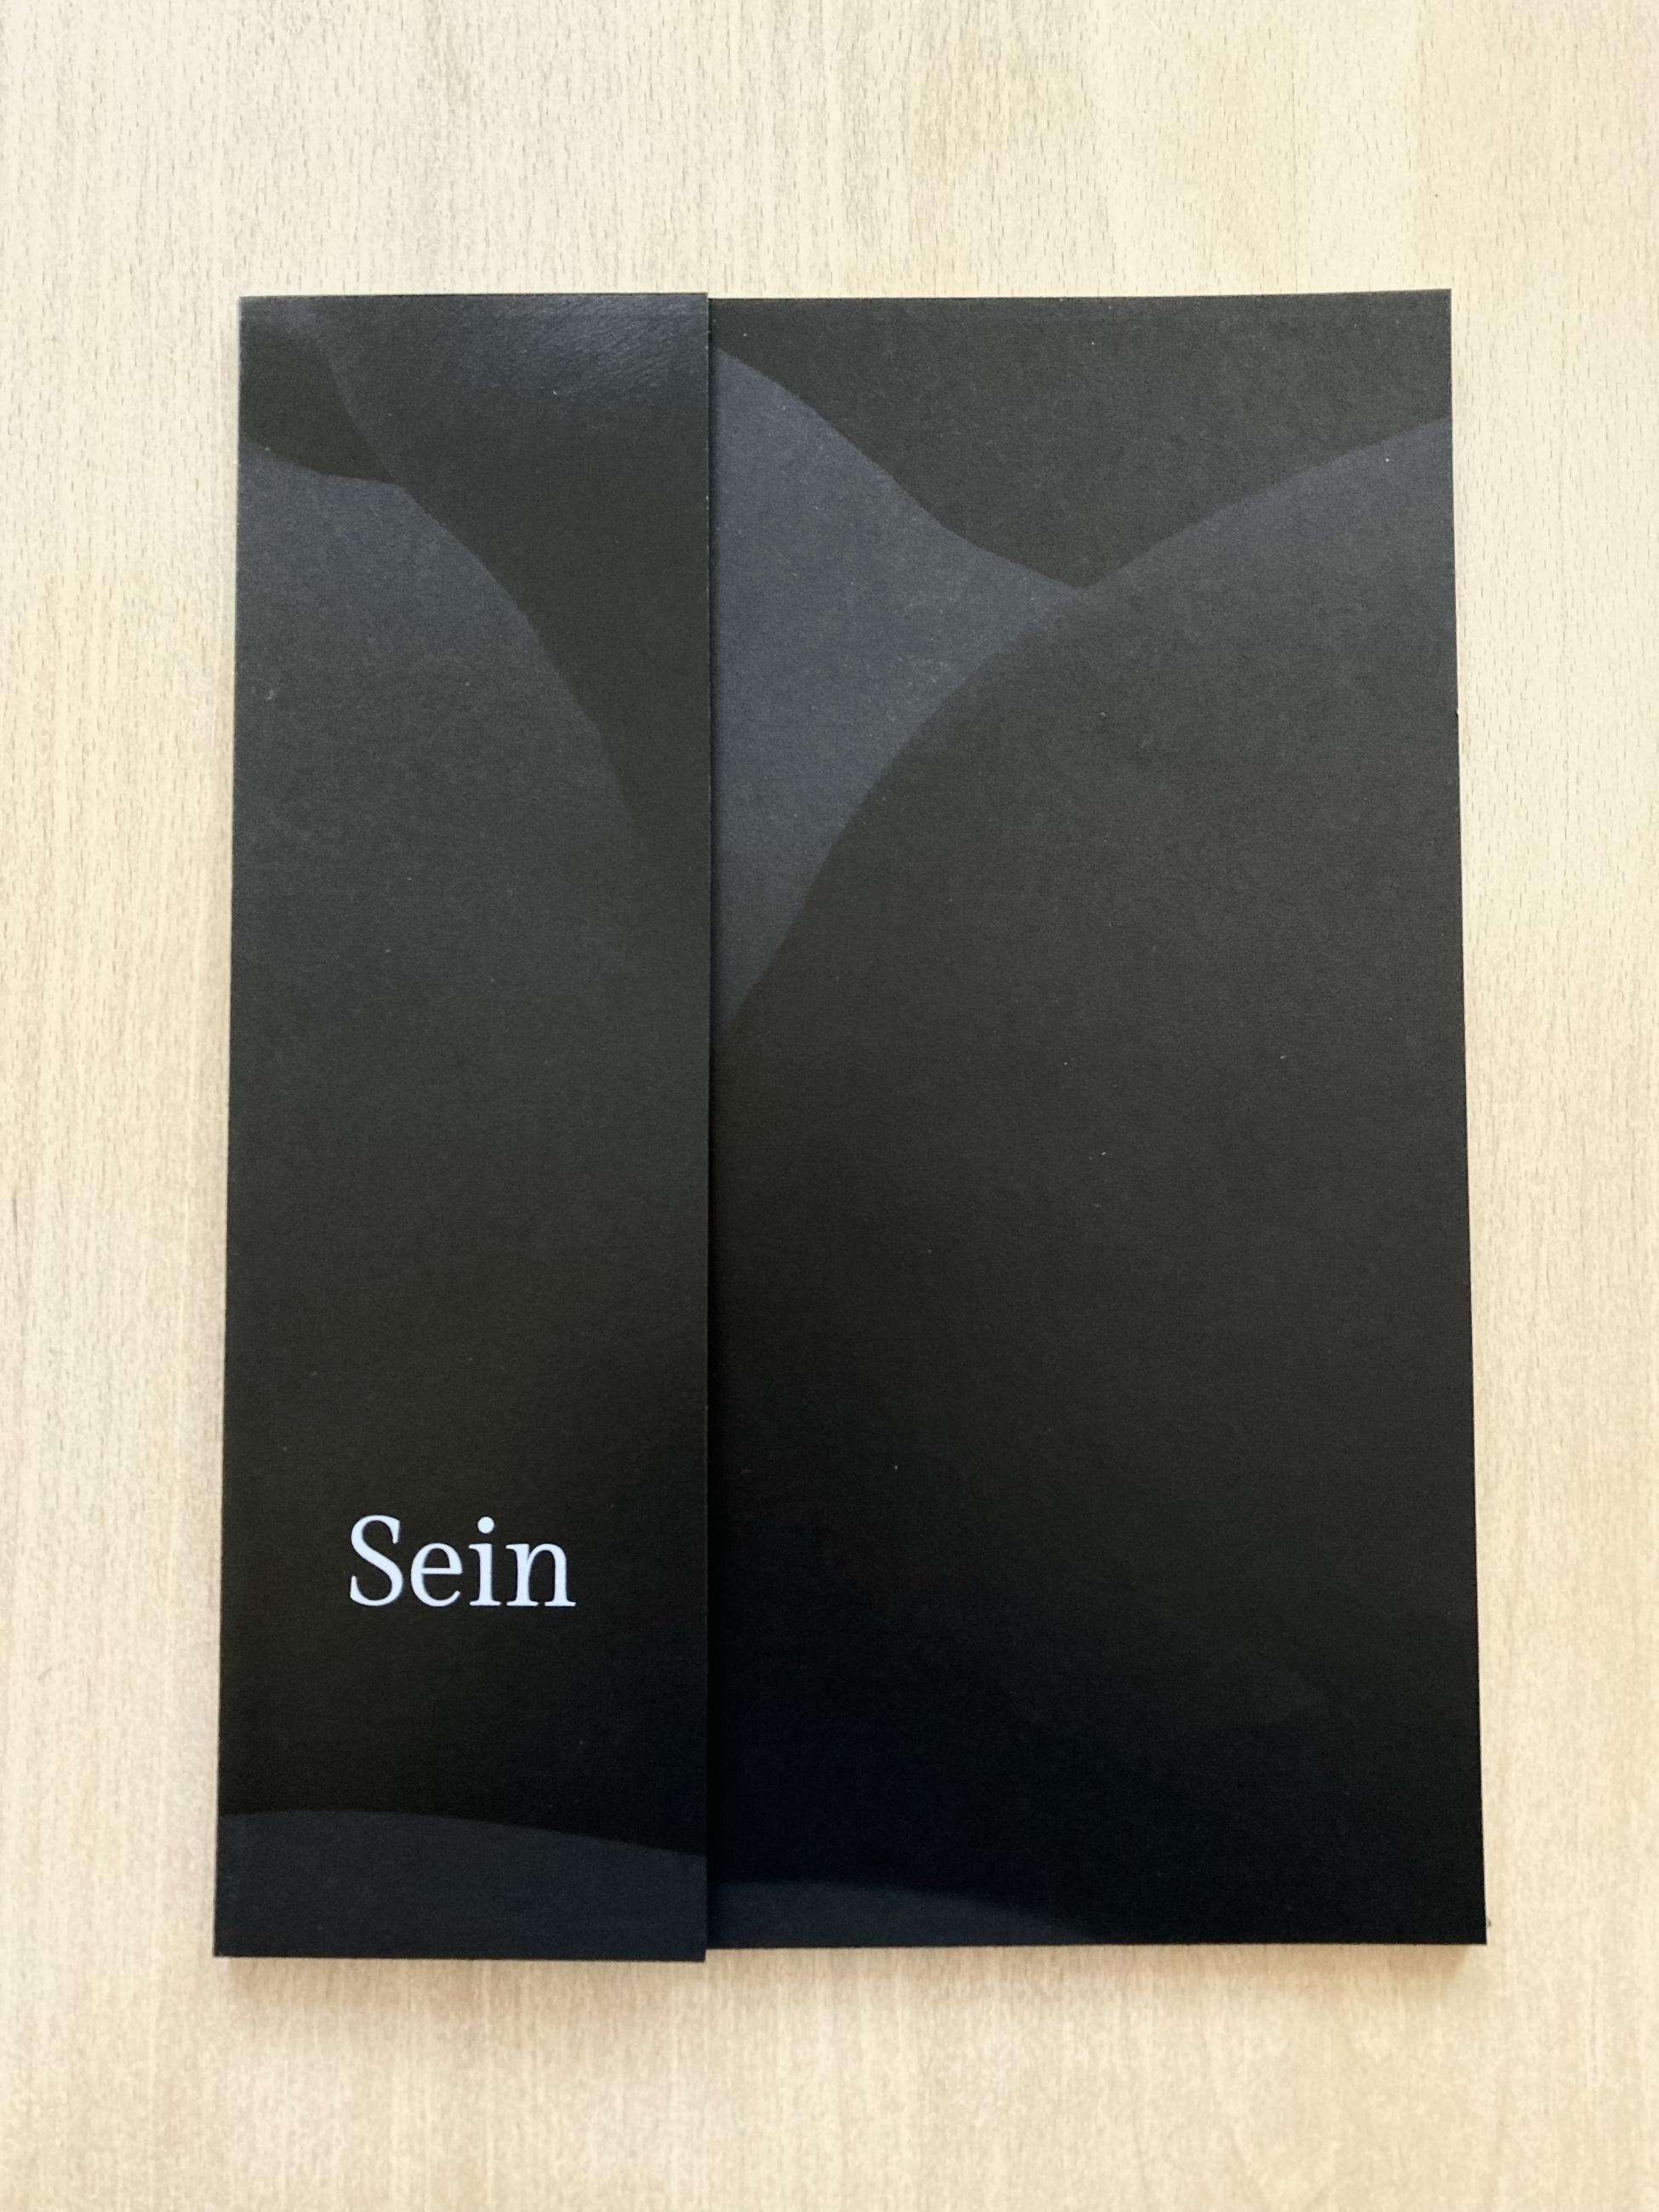 Cover, Schwarzdruck auf Schwarz, weibliche Körperform+ Titel "Sein"